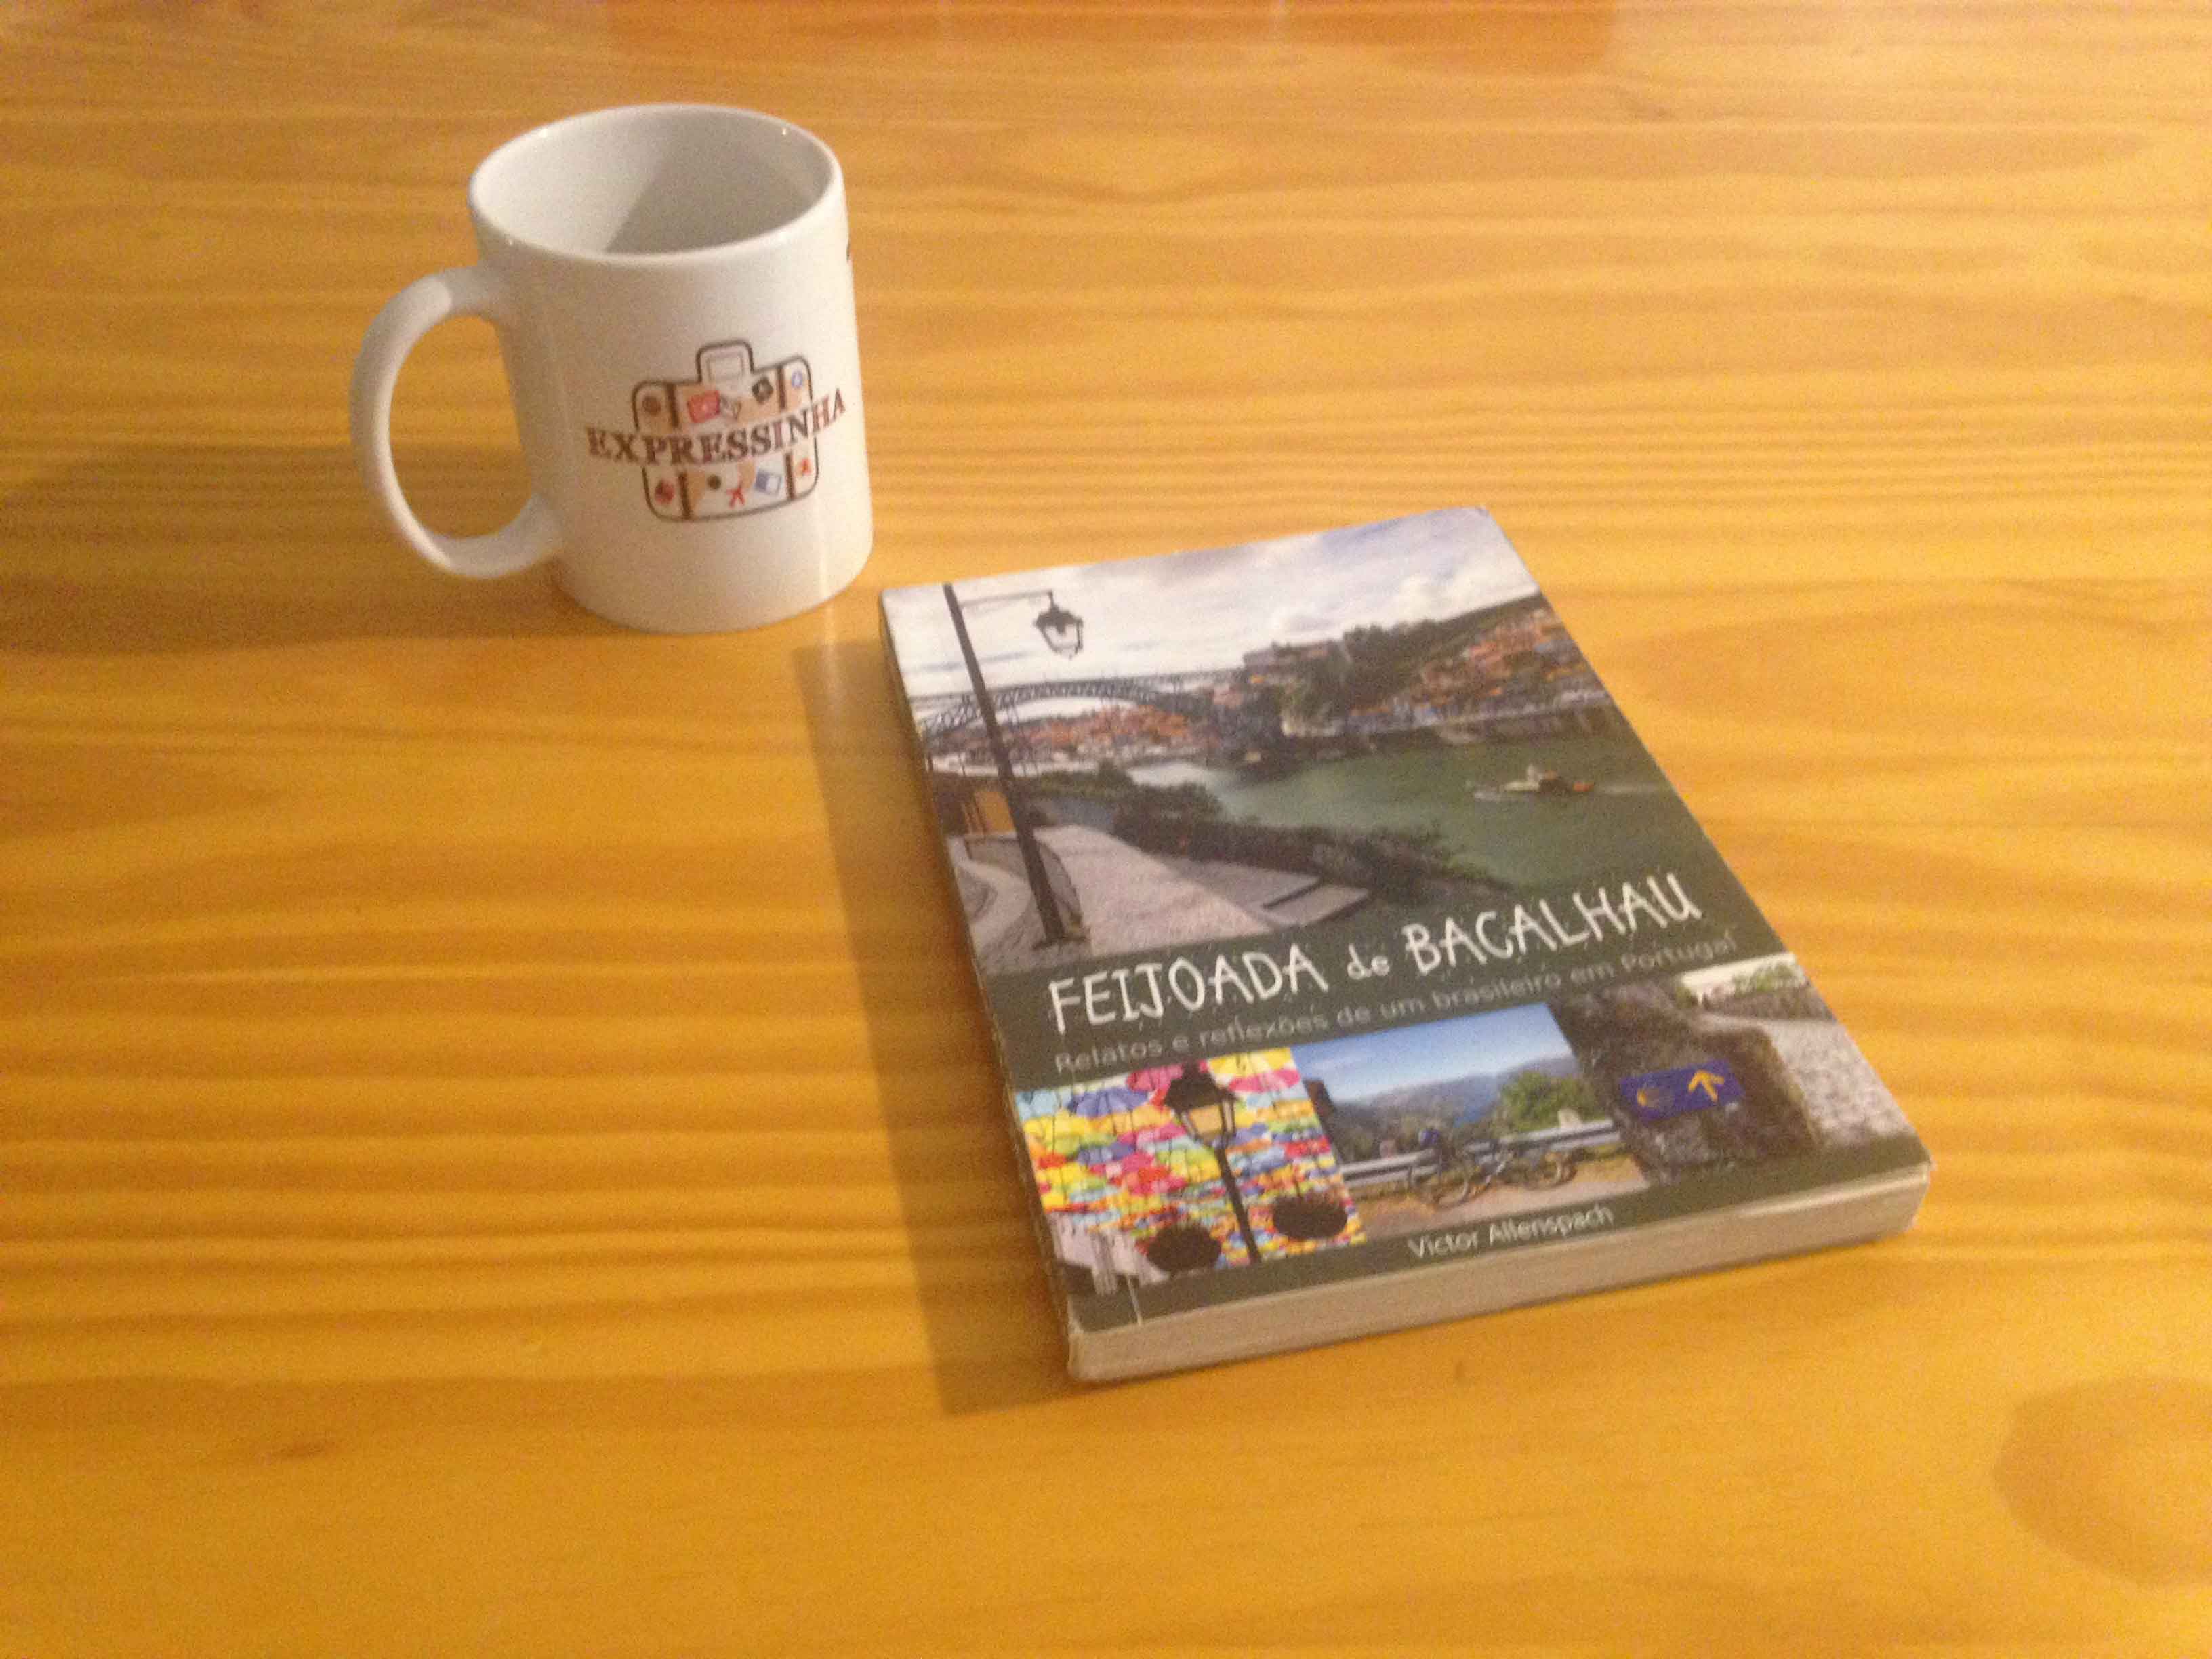 Feijoada de Bacalhau: um ótimo livro sobre Portugal e sobre a vida na Europa. Conheça a vida de imigrante em Portugal e lugares fora da rota comum.